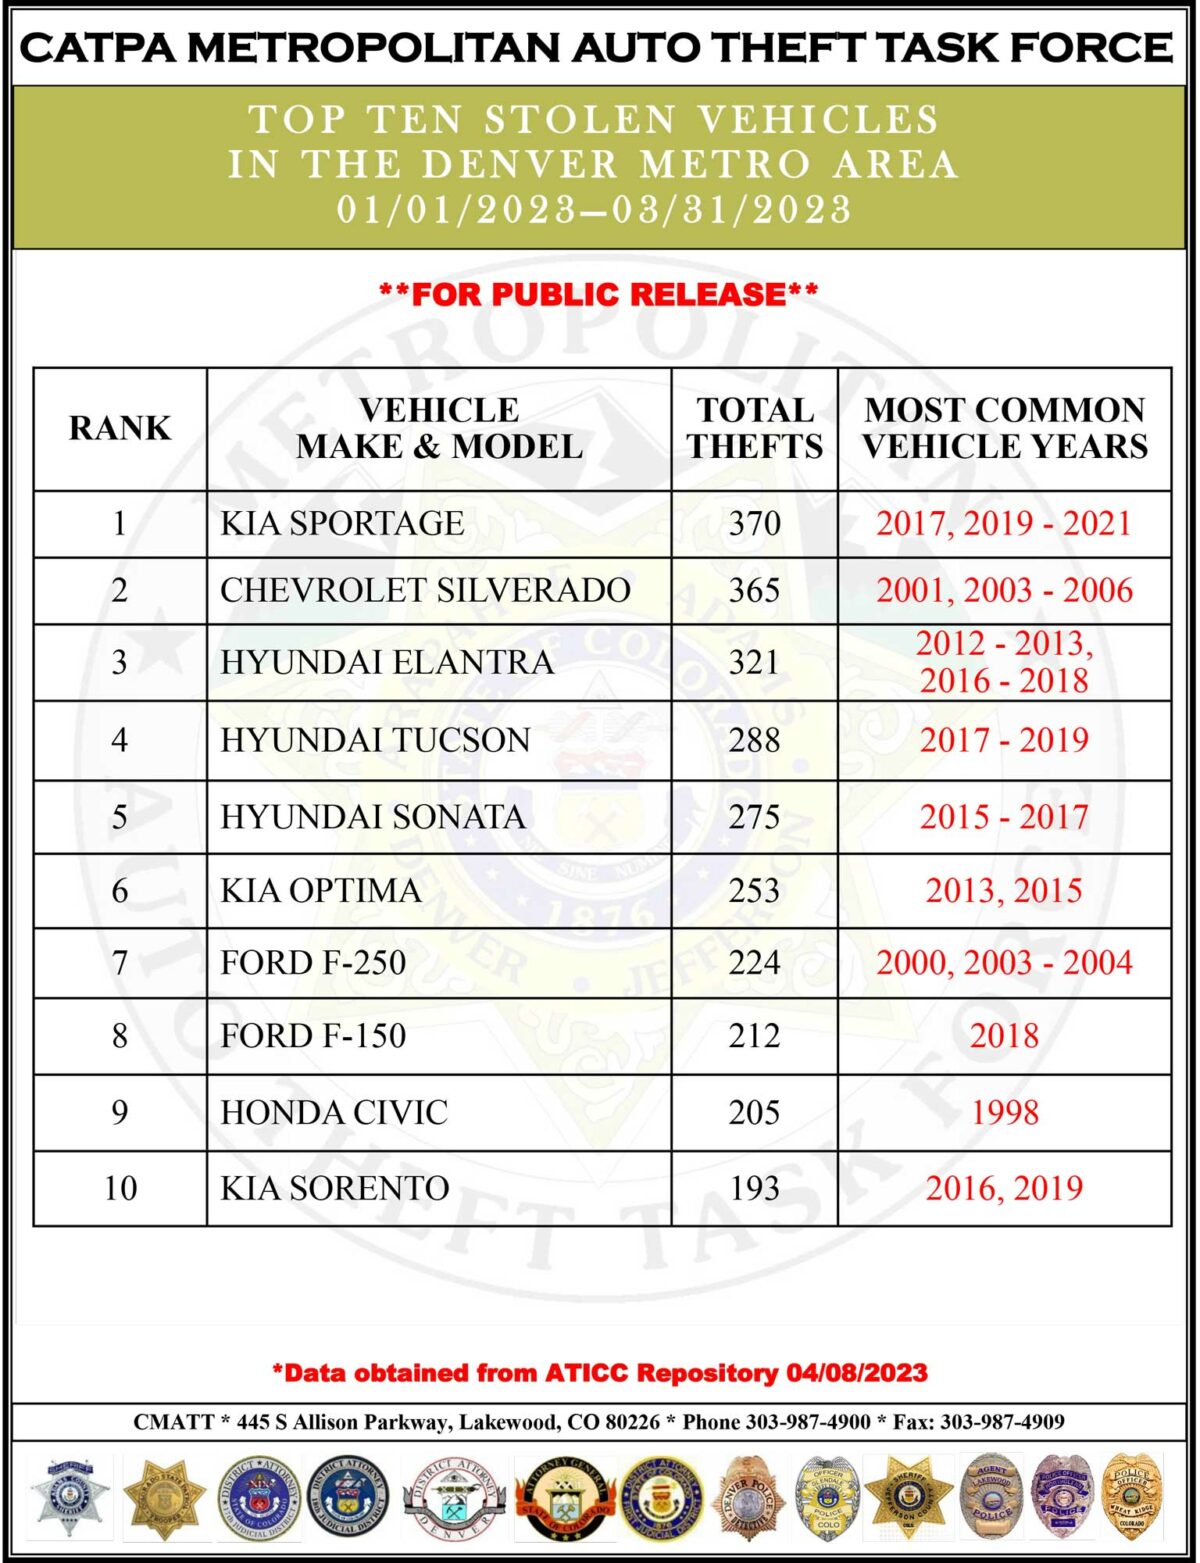 Top Ten Stolen Vehicles in Denver in early 2023